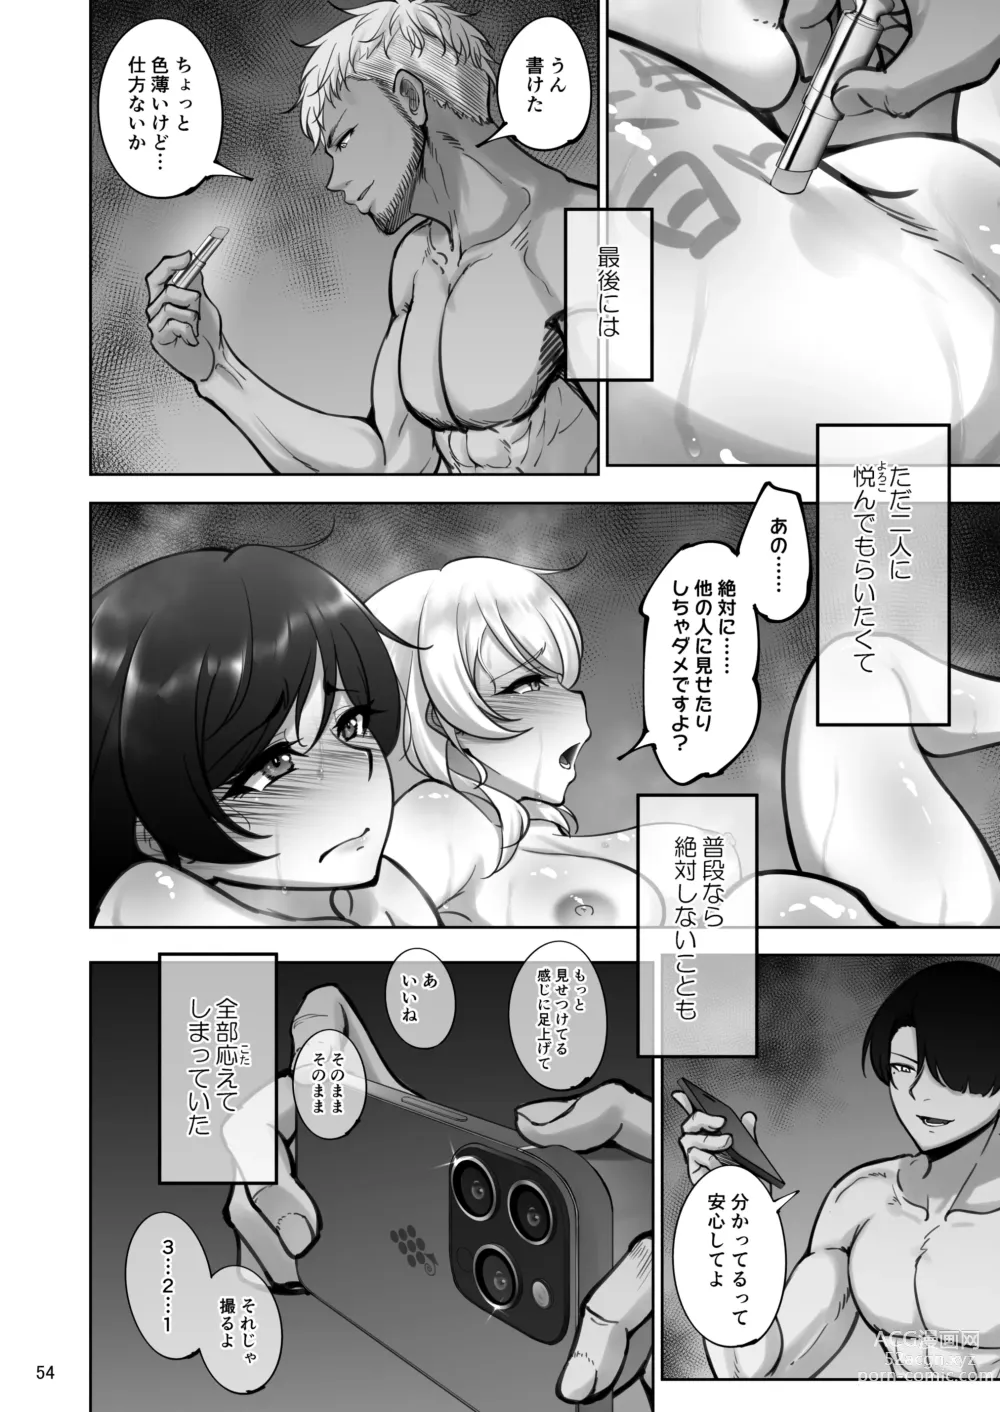 Page 53 of doujinshi Eri to Nozomi no Joujiroku 1